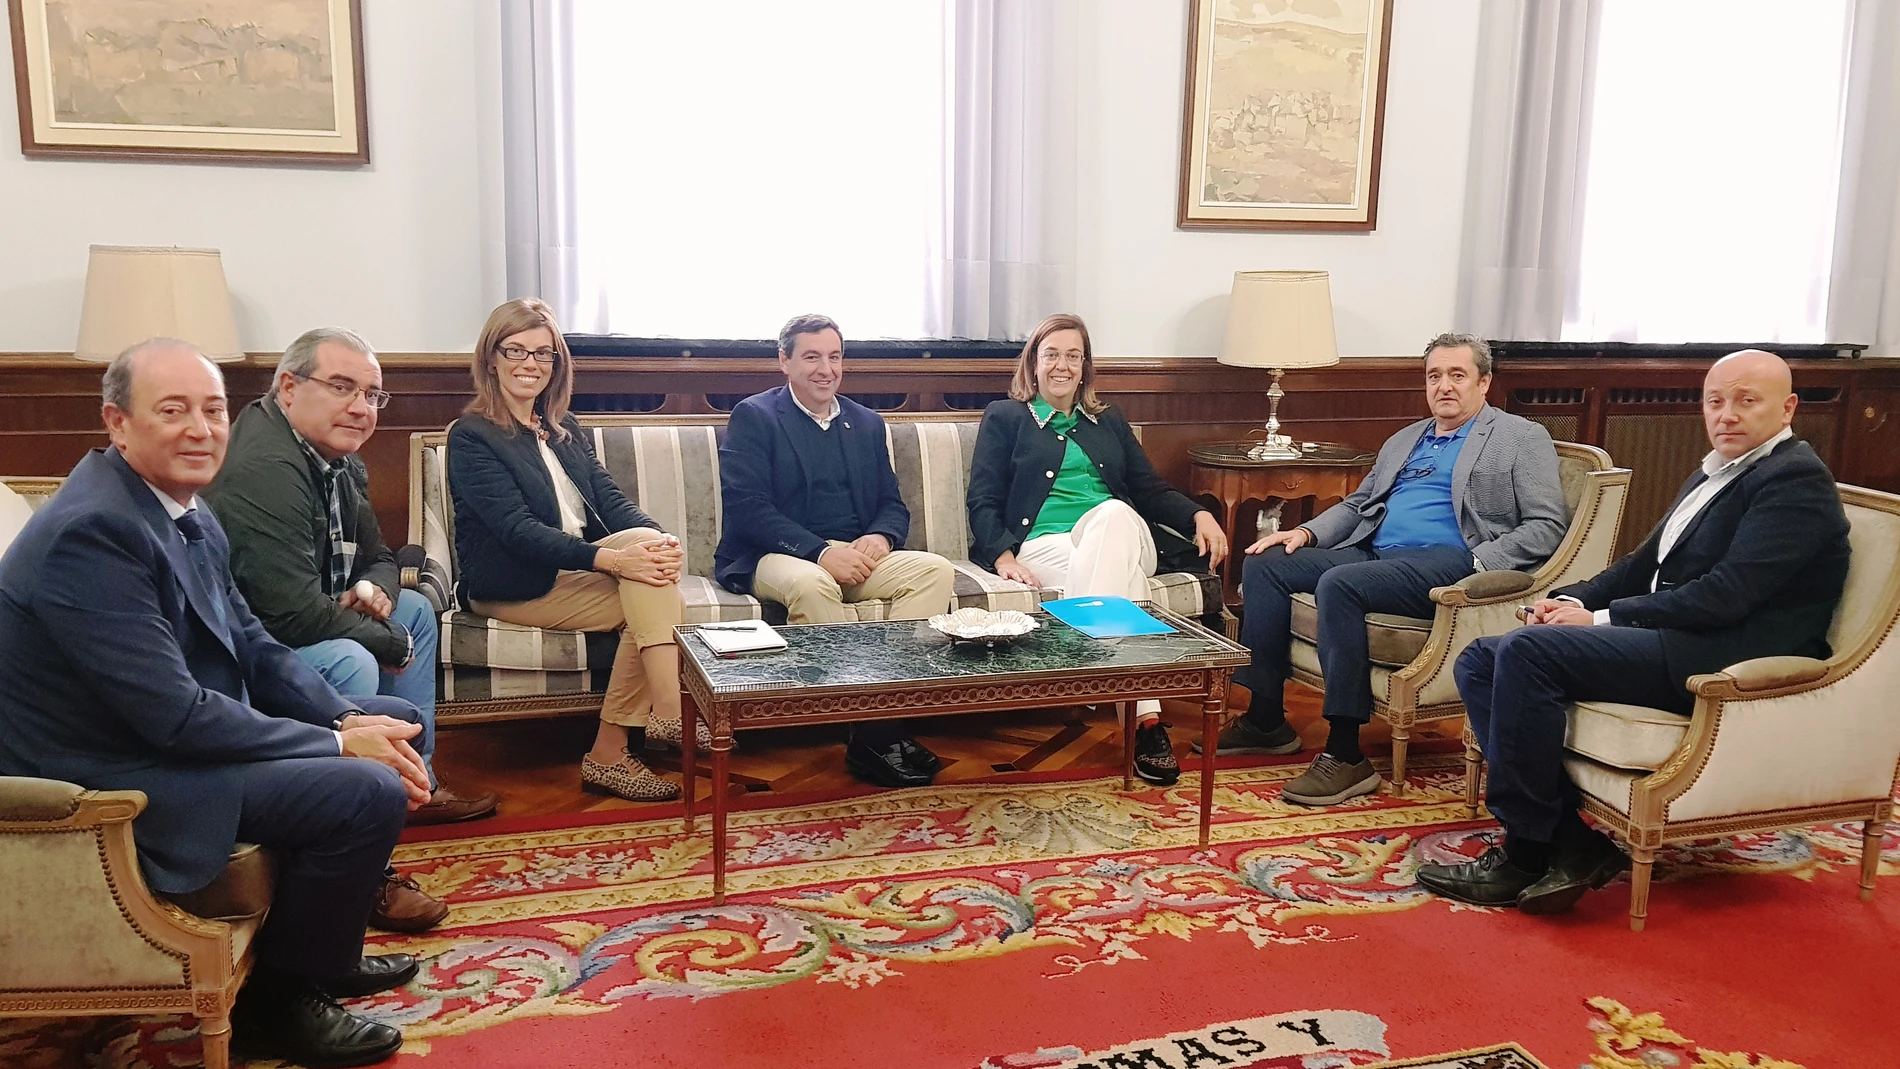 La presidenta de la Diputación de Palencia, Ángeles Armisén, con representantes de la Cámara, en una imagen de archivo